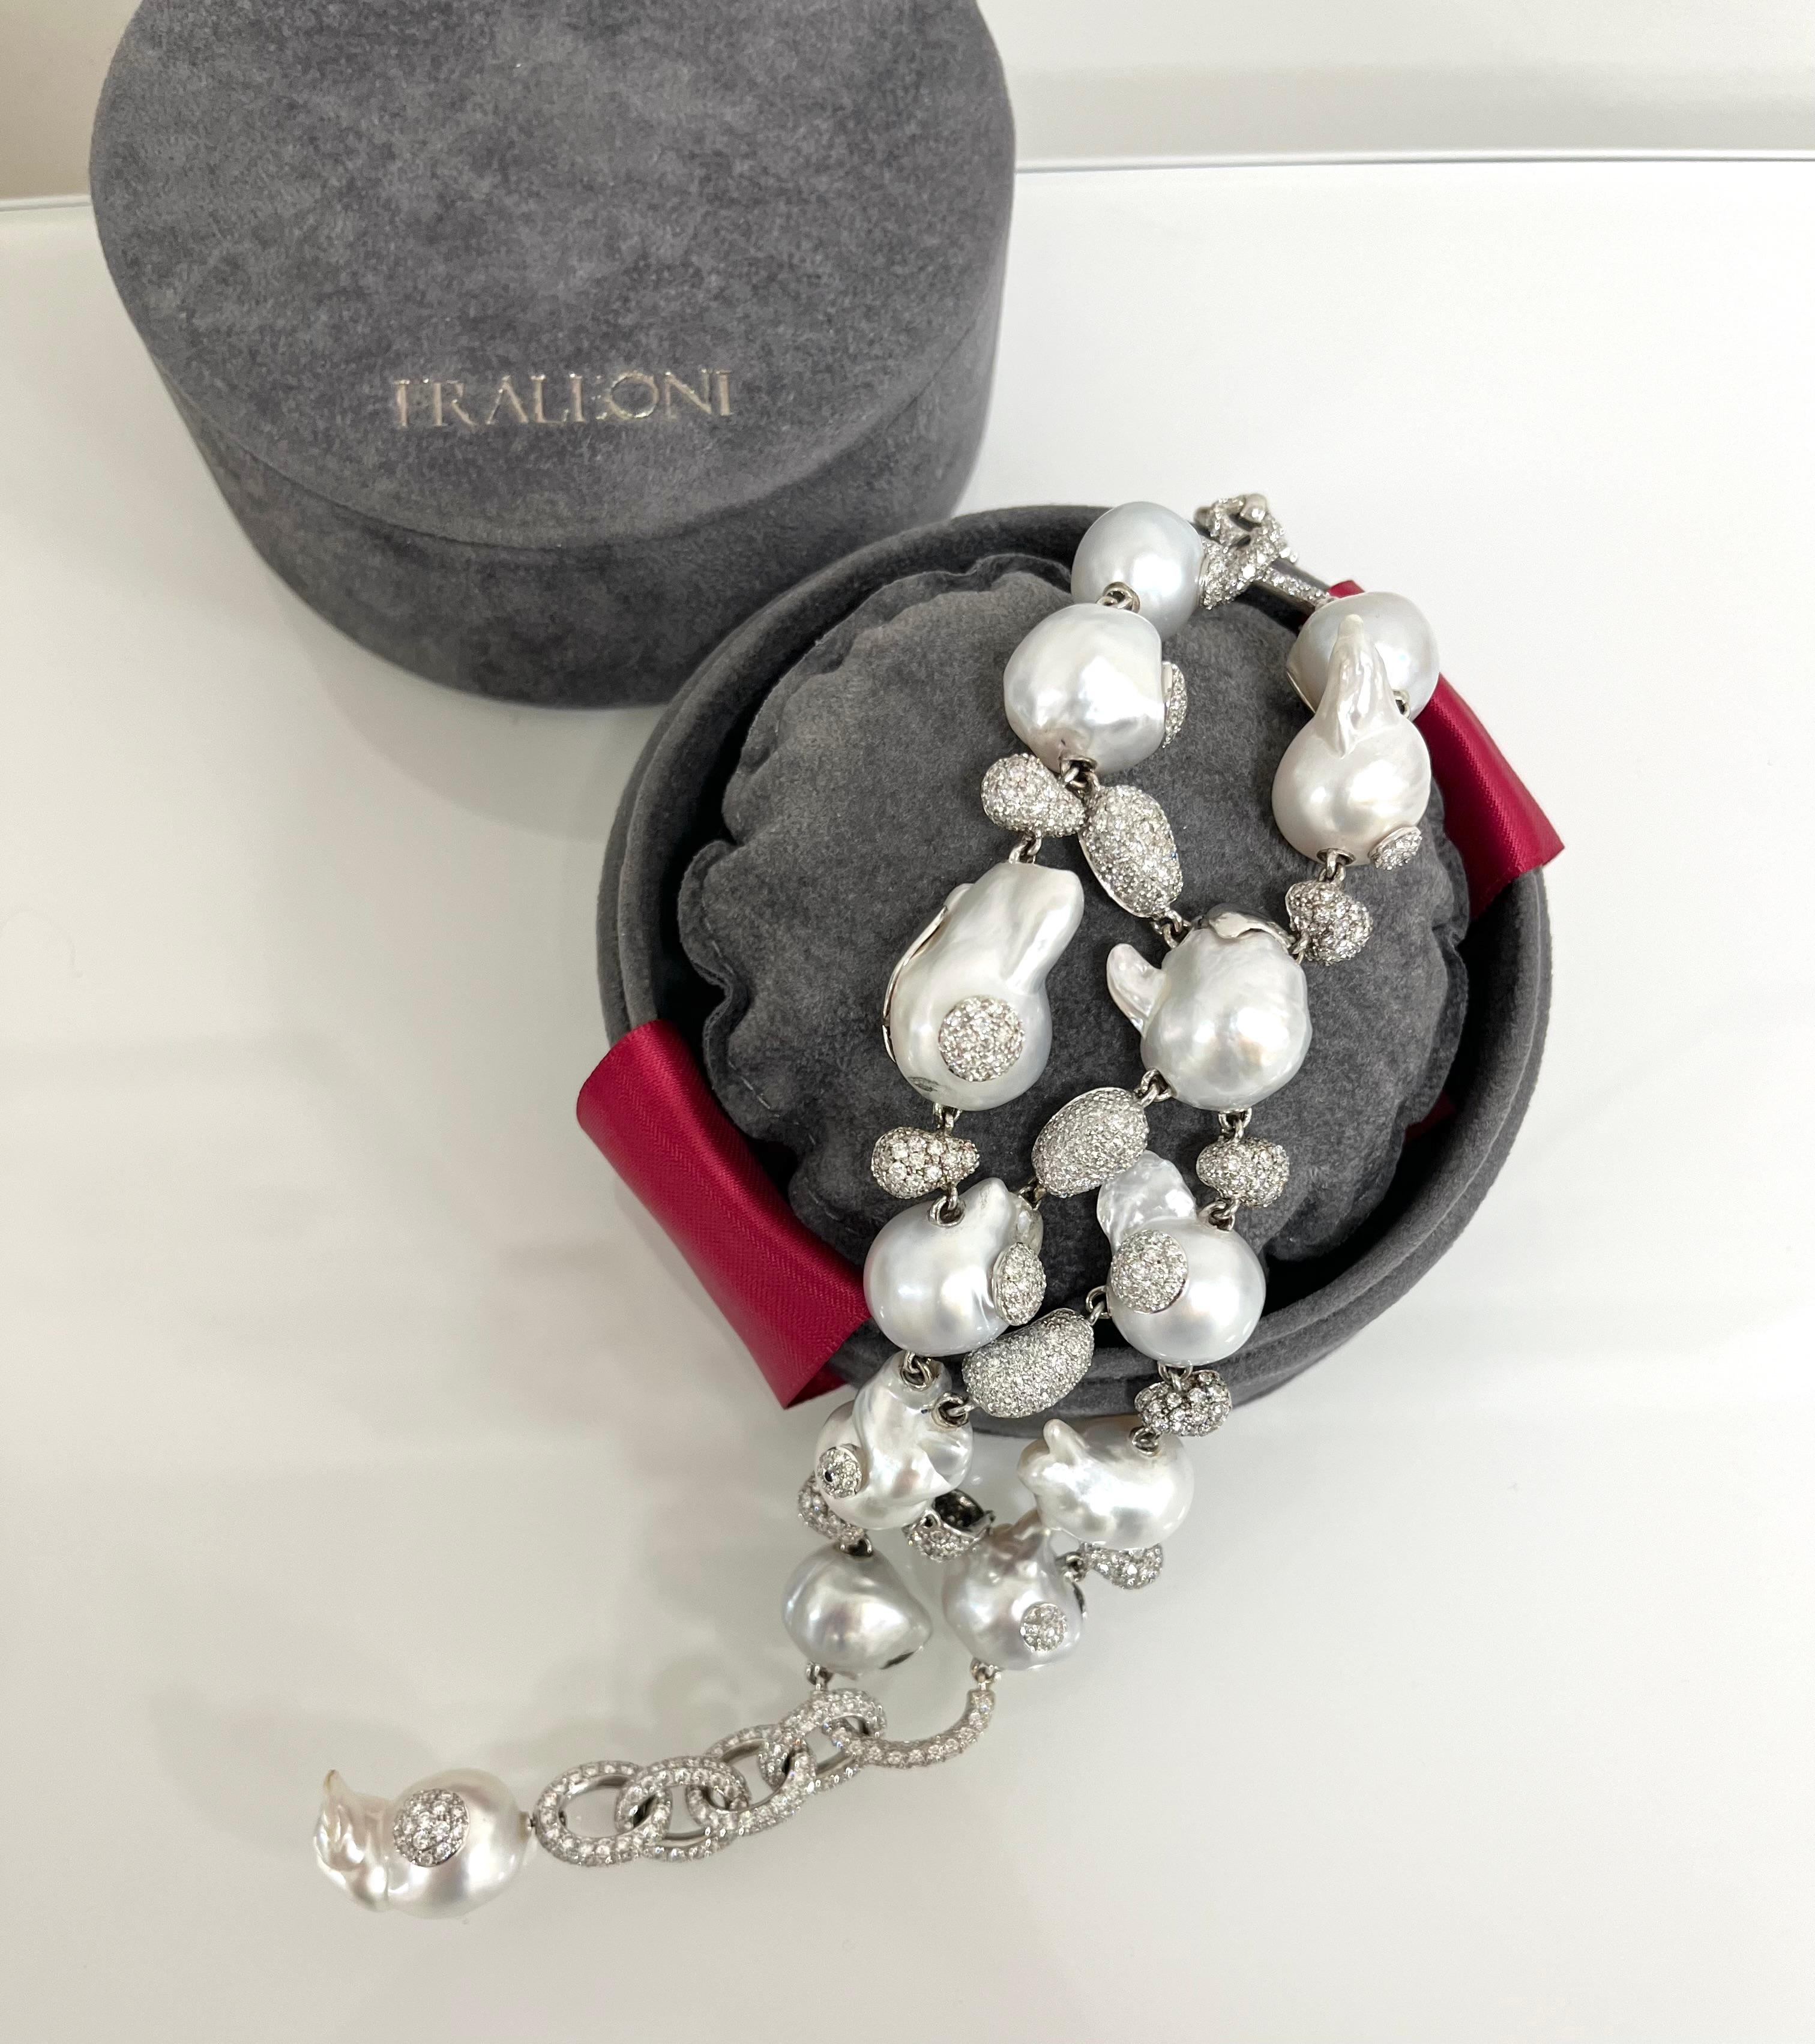 Modern Fraleoni 18 Kt. White Gold Diamond Australian Baroque Pearl Bracelet For Sale